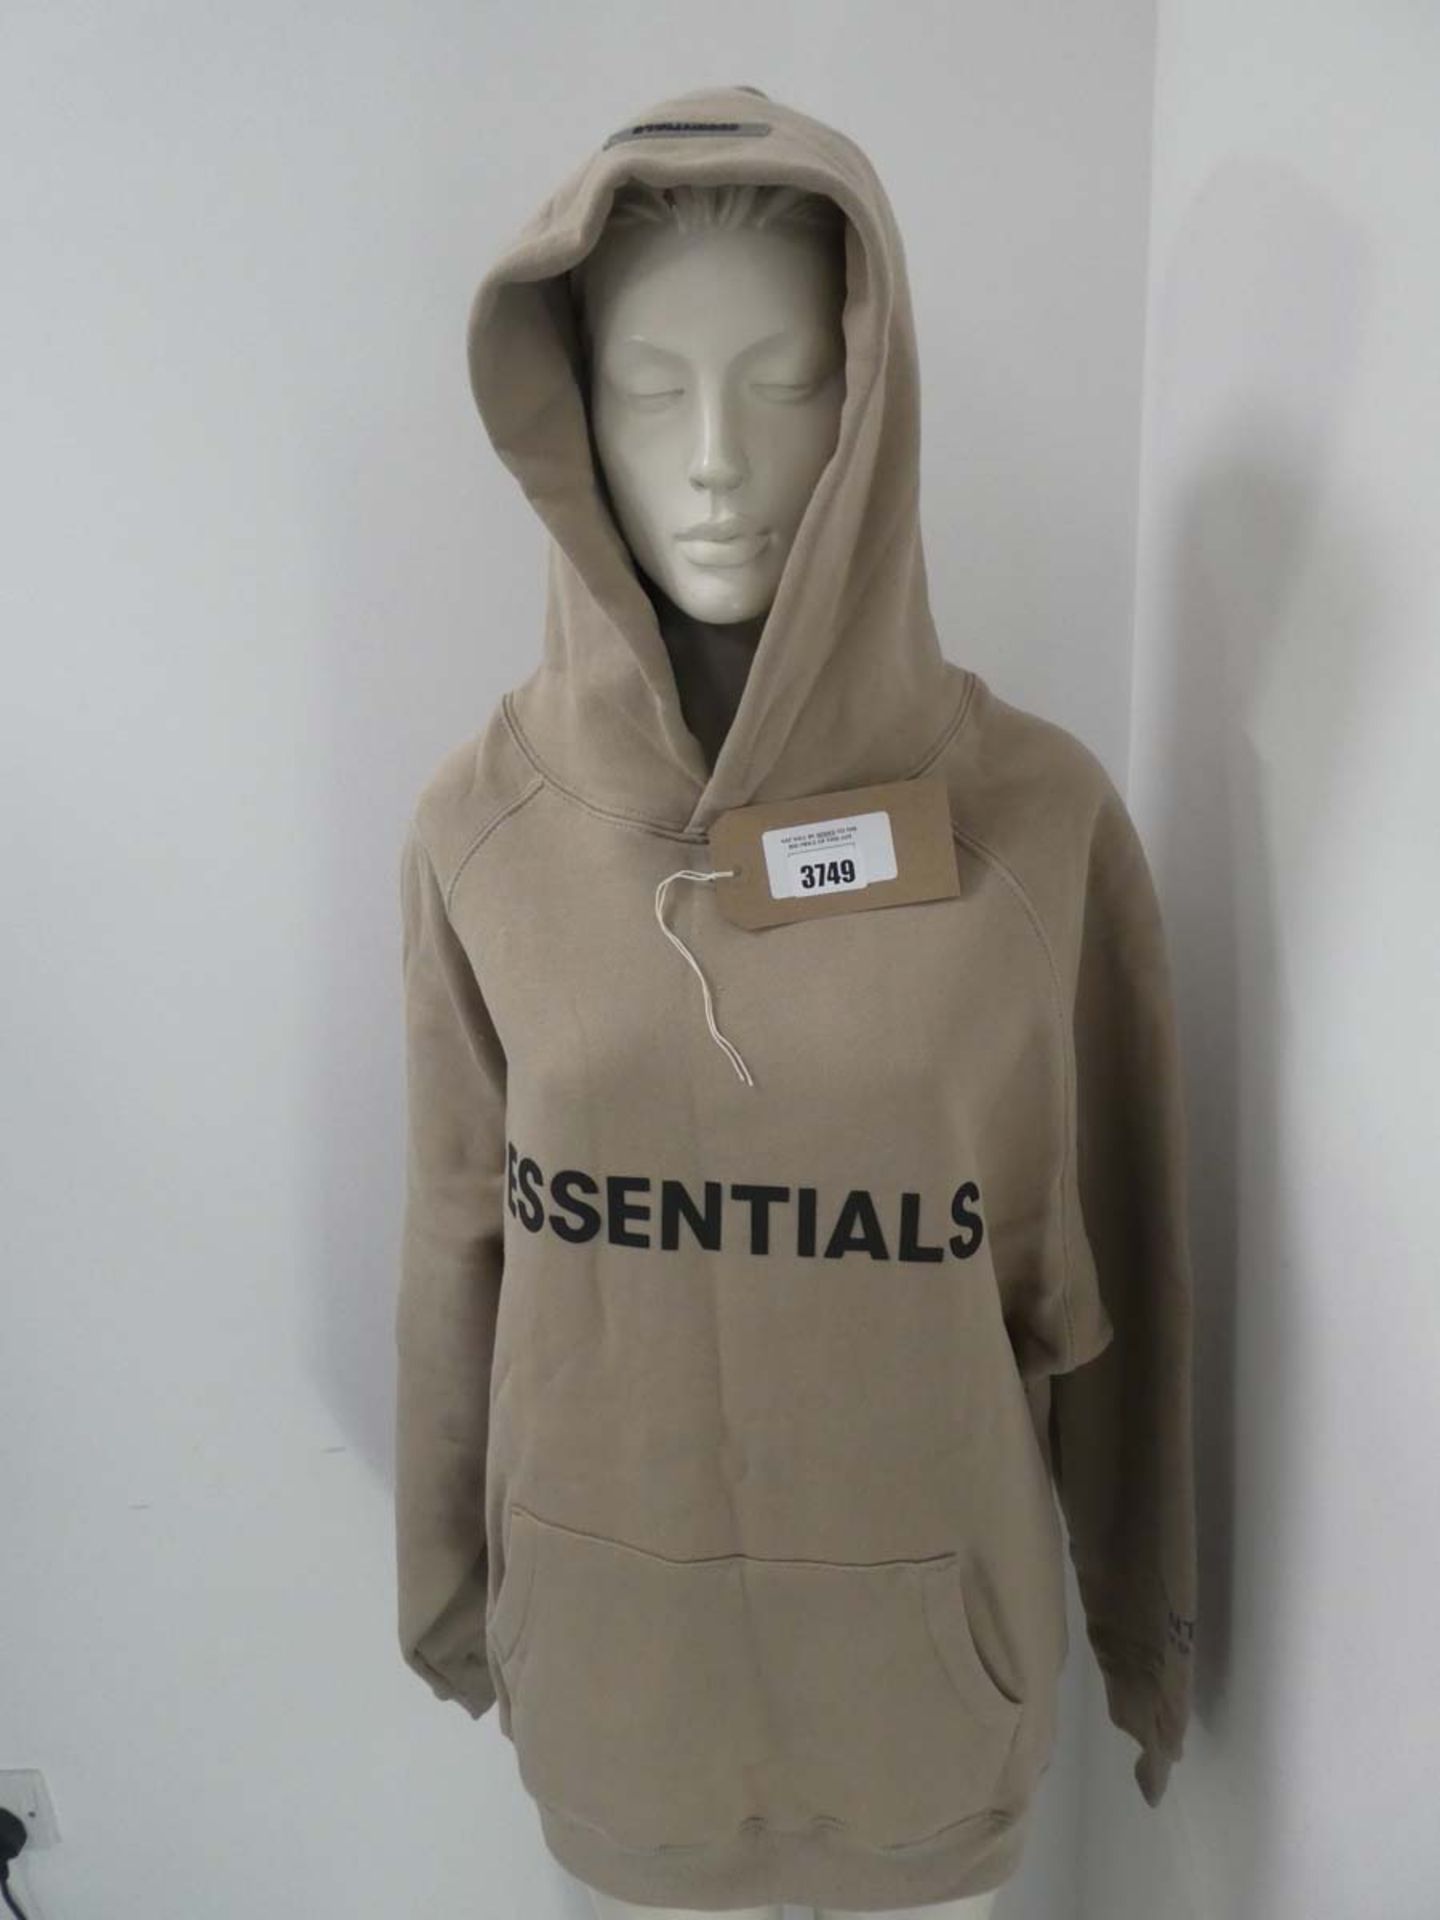 Essentials Fear of Good hoodie in tan size medium (in bag)